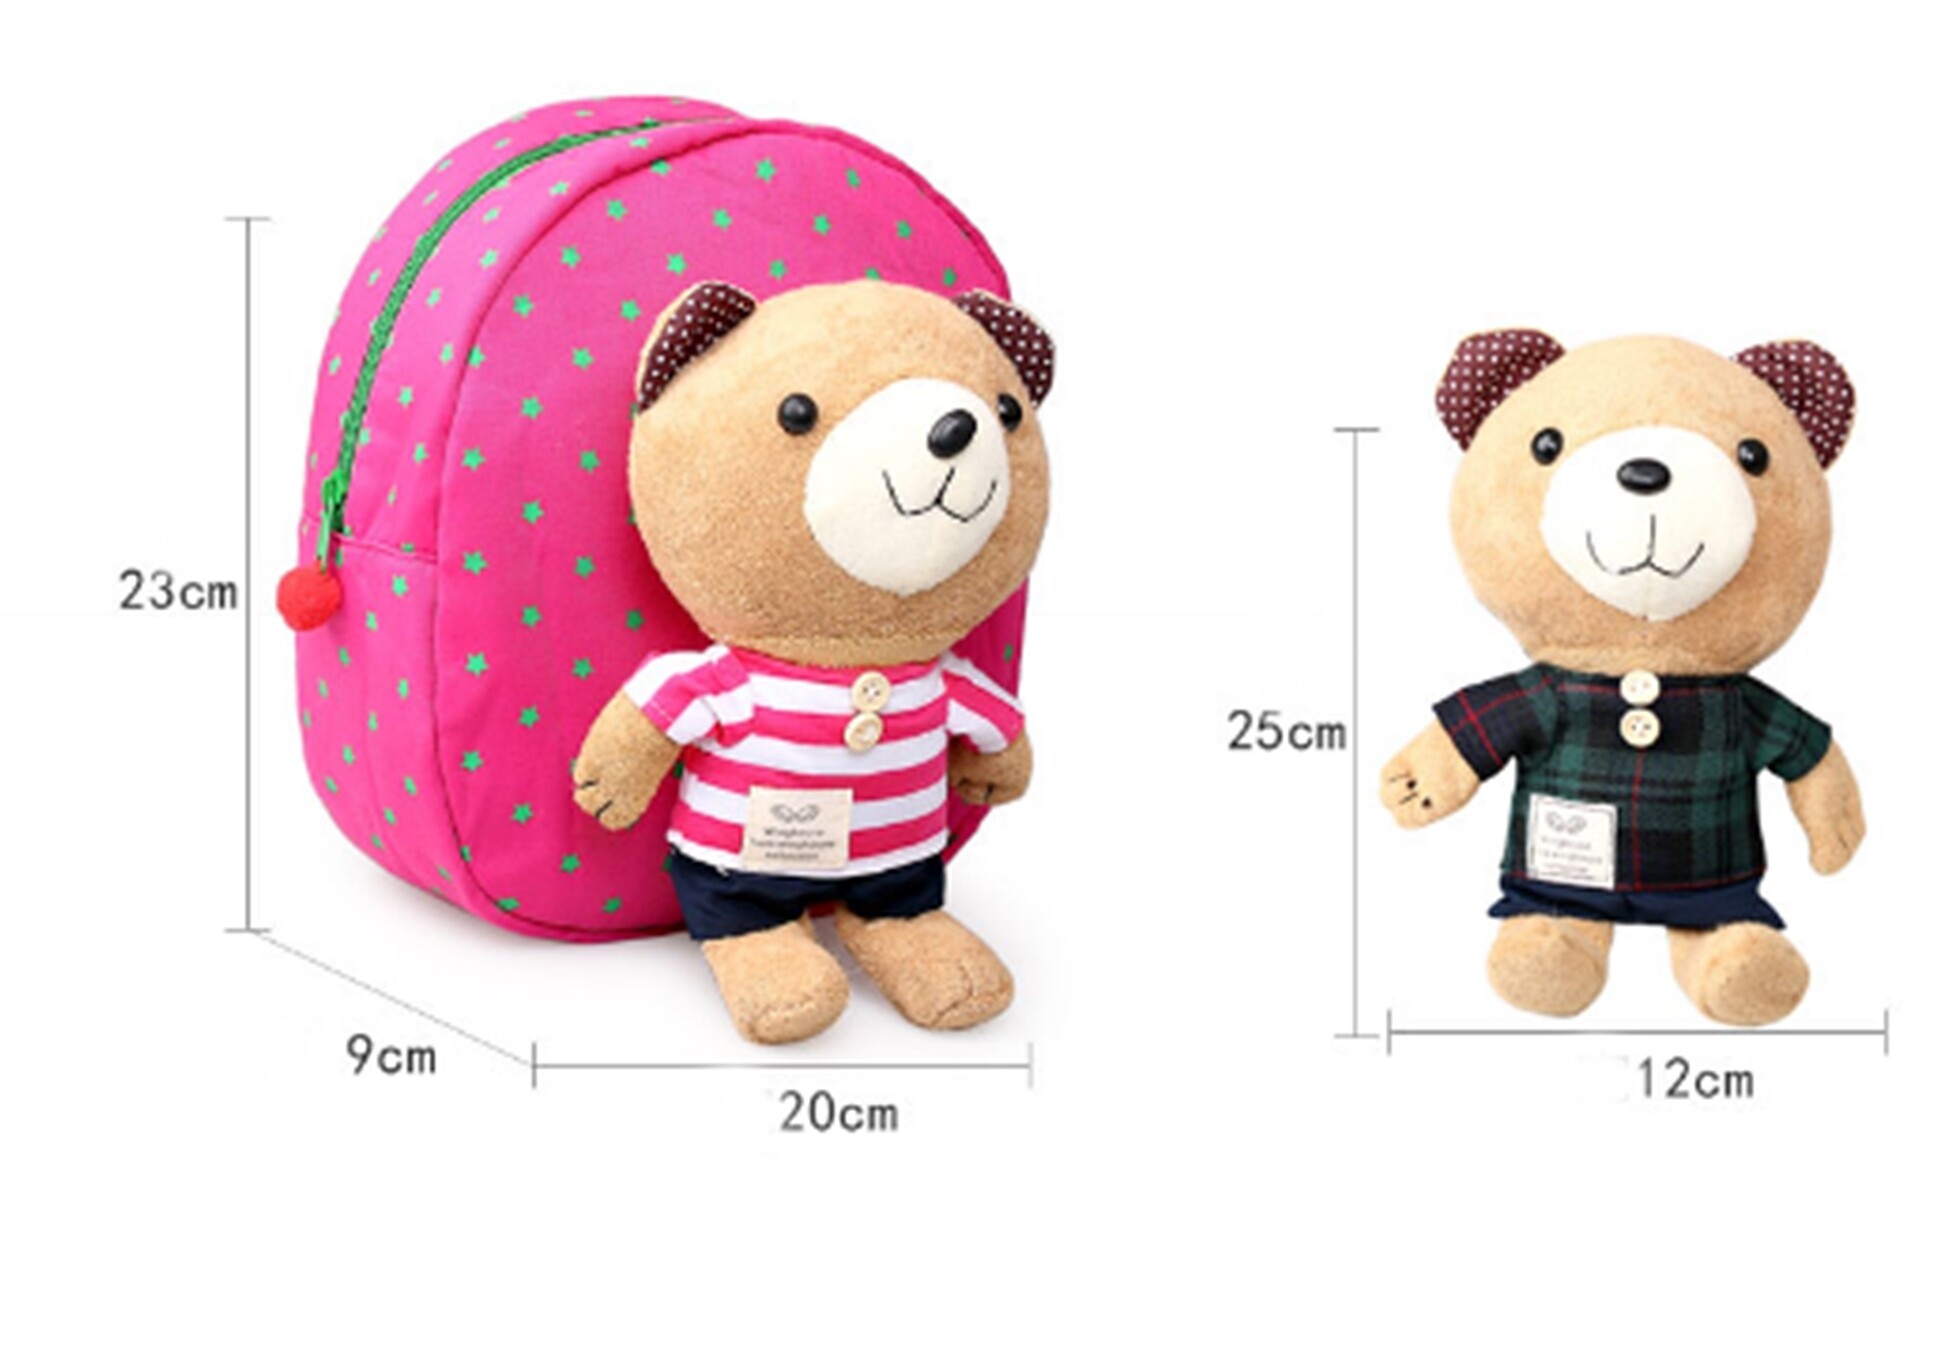 ซื้อที่ไหน กระเป๋าเป้จูงเด็ก กระเป๋าเด็ก สายจูงเด็ก เป้จูง กระเป๋าเป้เด็ก ลายหมี สีชมพู